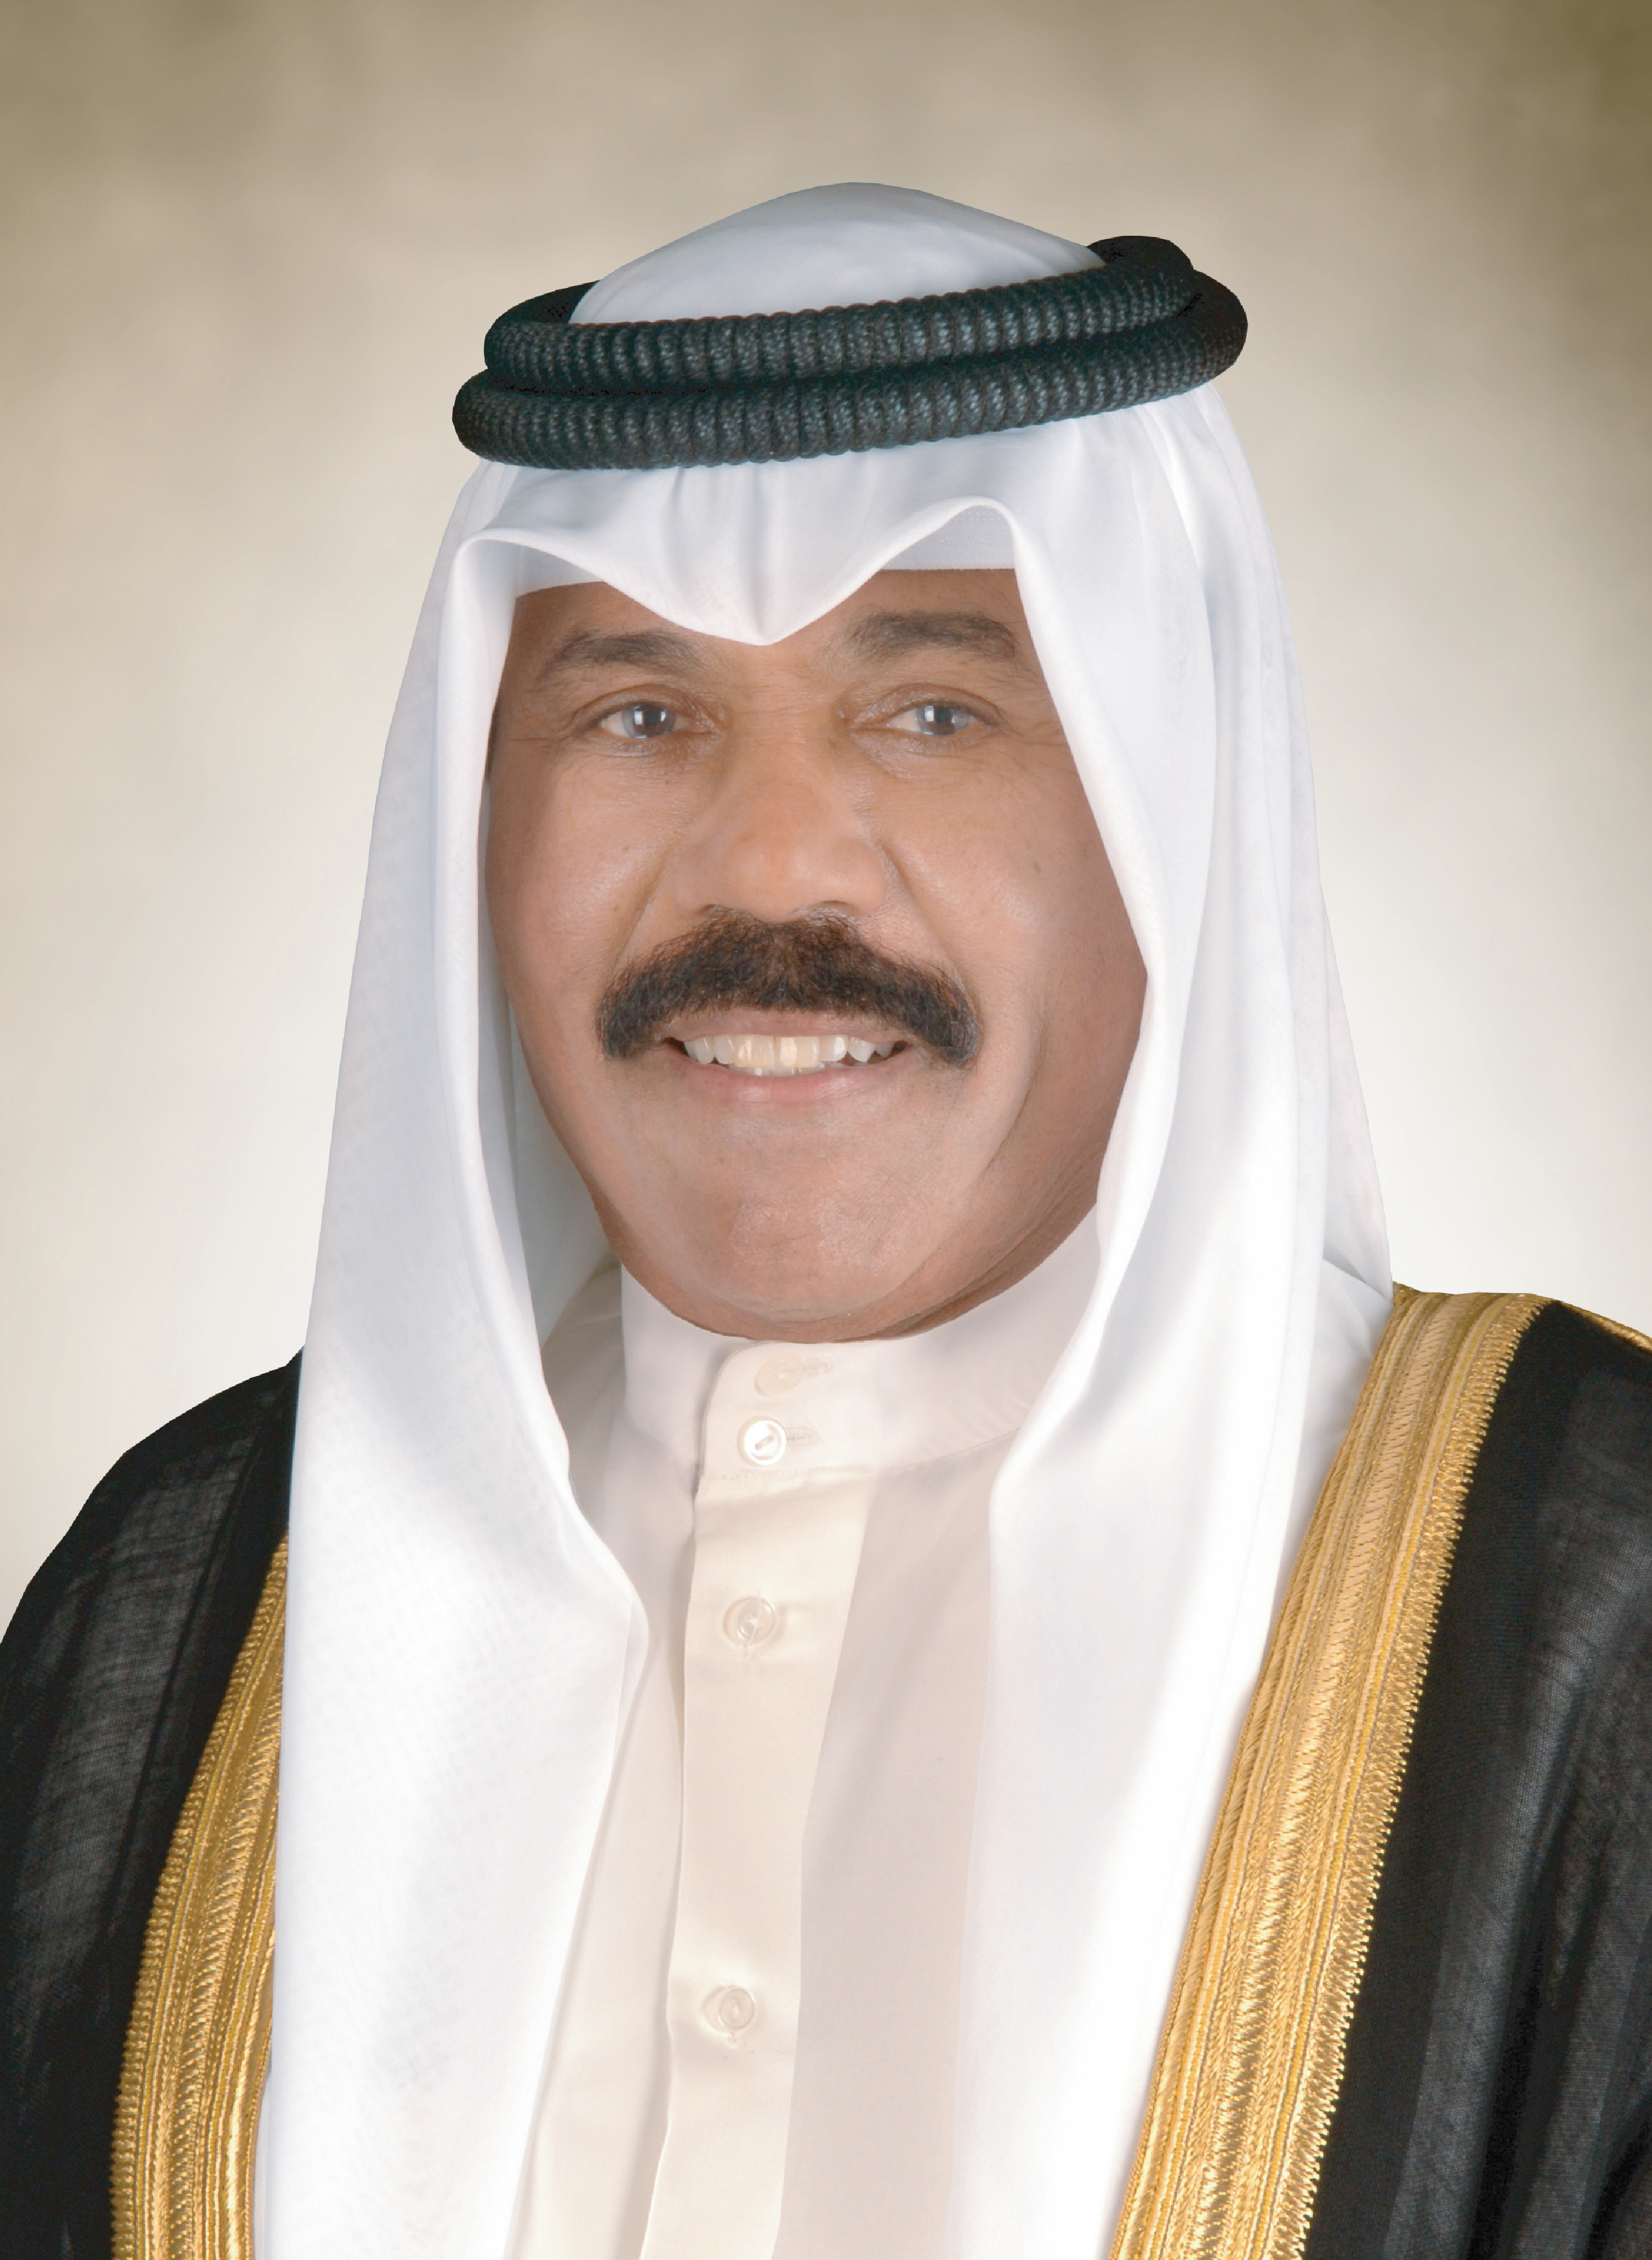 سمو أمير البلاد يهنئ ولي العهد السعودي بنجاح العملية الجراحية التي أجراها